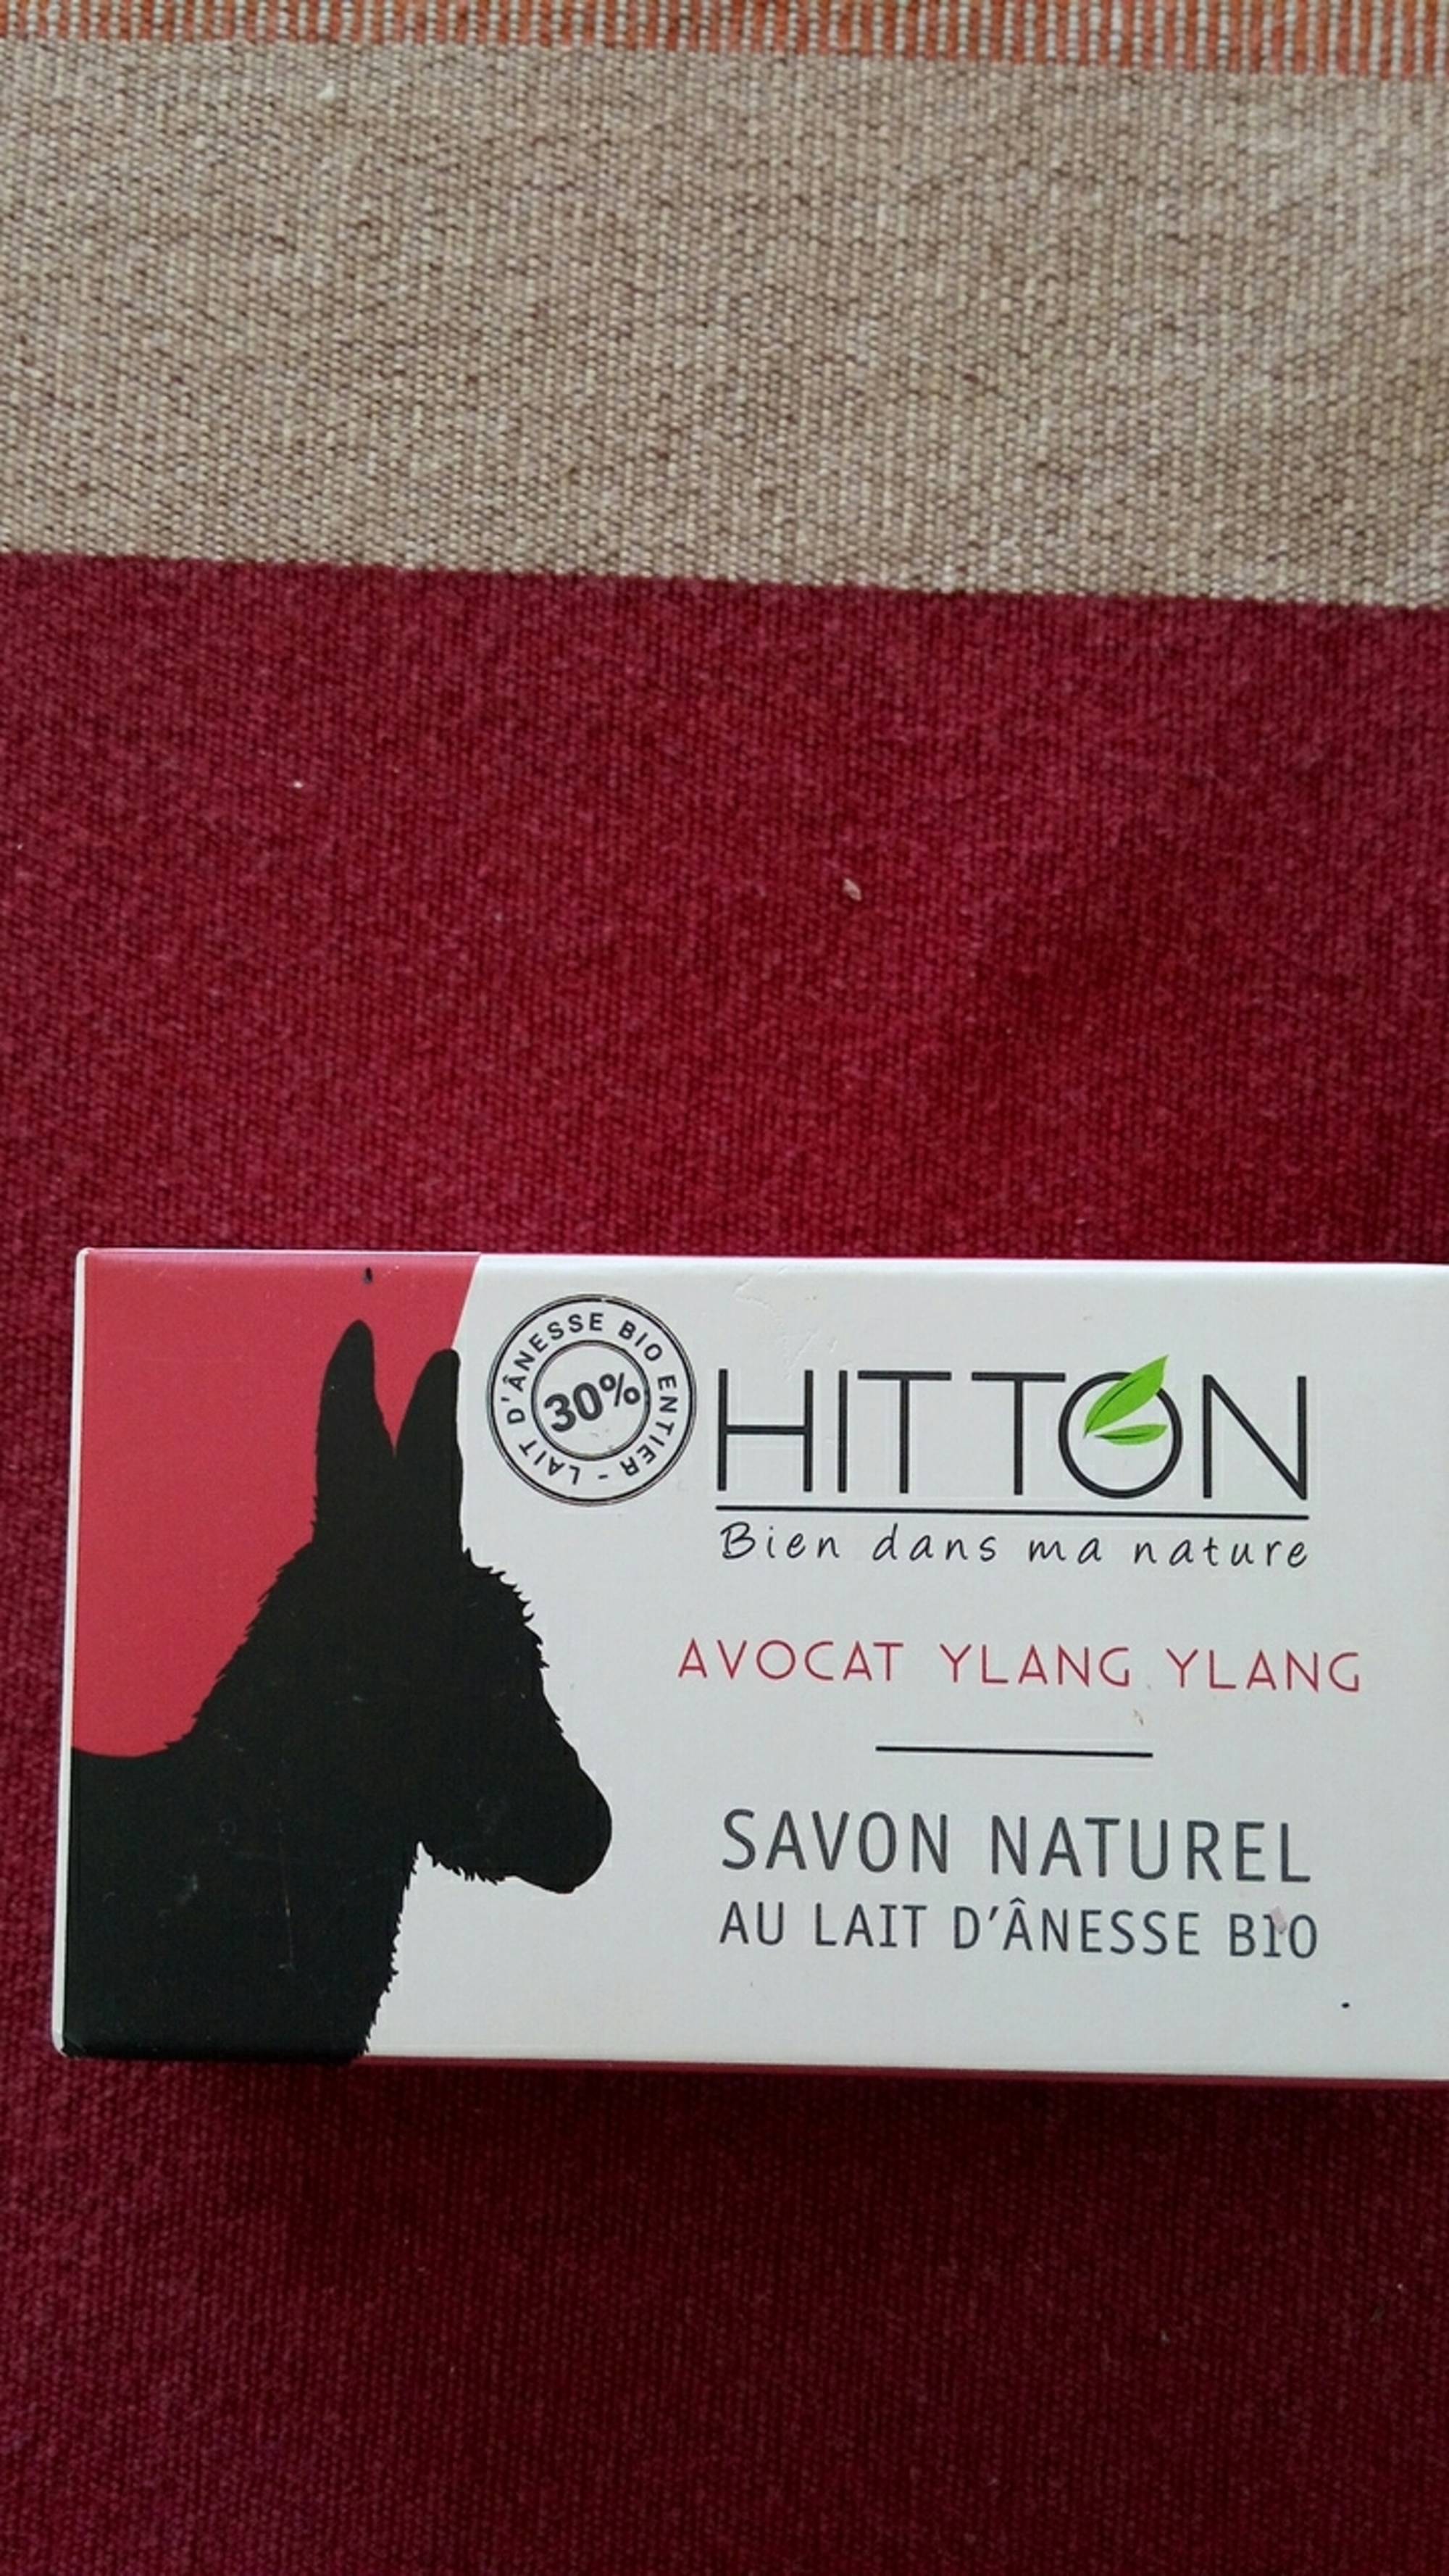 HITTON - Savon naturel - Au lait d'ânesse bio - Avocat ylang ylang